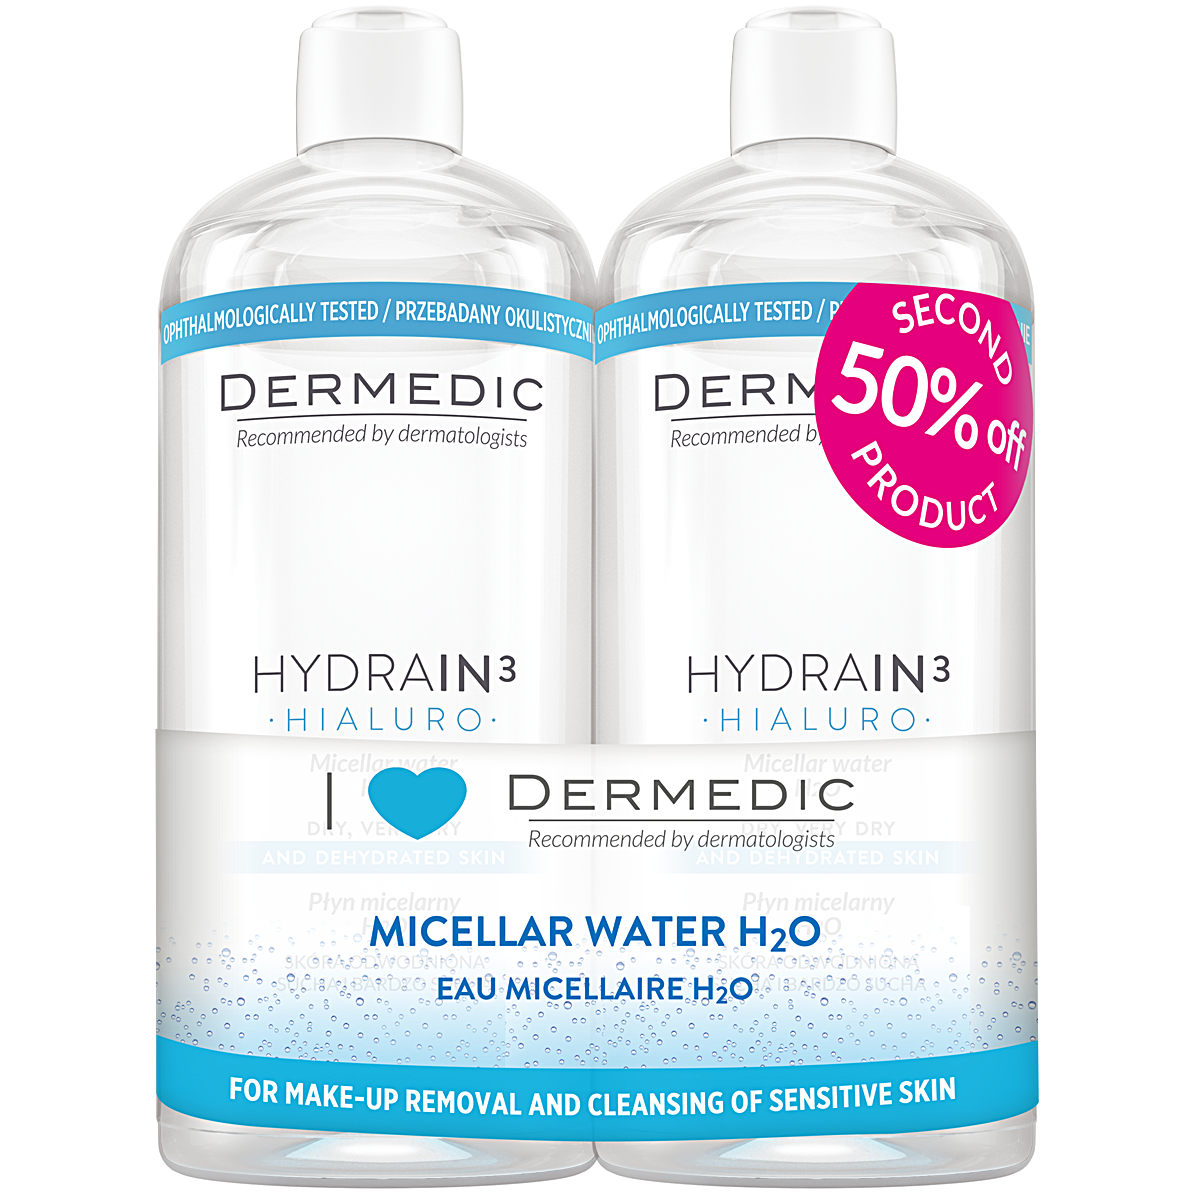 Вода h2o отзывы. Дермедик гидреин 3 гиалуро мицеллярная вода дуопак 500мл*2 (2в1). Дермедик мицеллярная вода h2o гидреин 3 гиалуро. Термальная мицеллярная вода для лица. Термальная вода h2o.